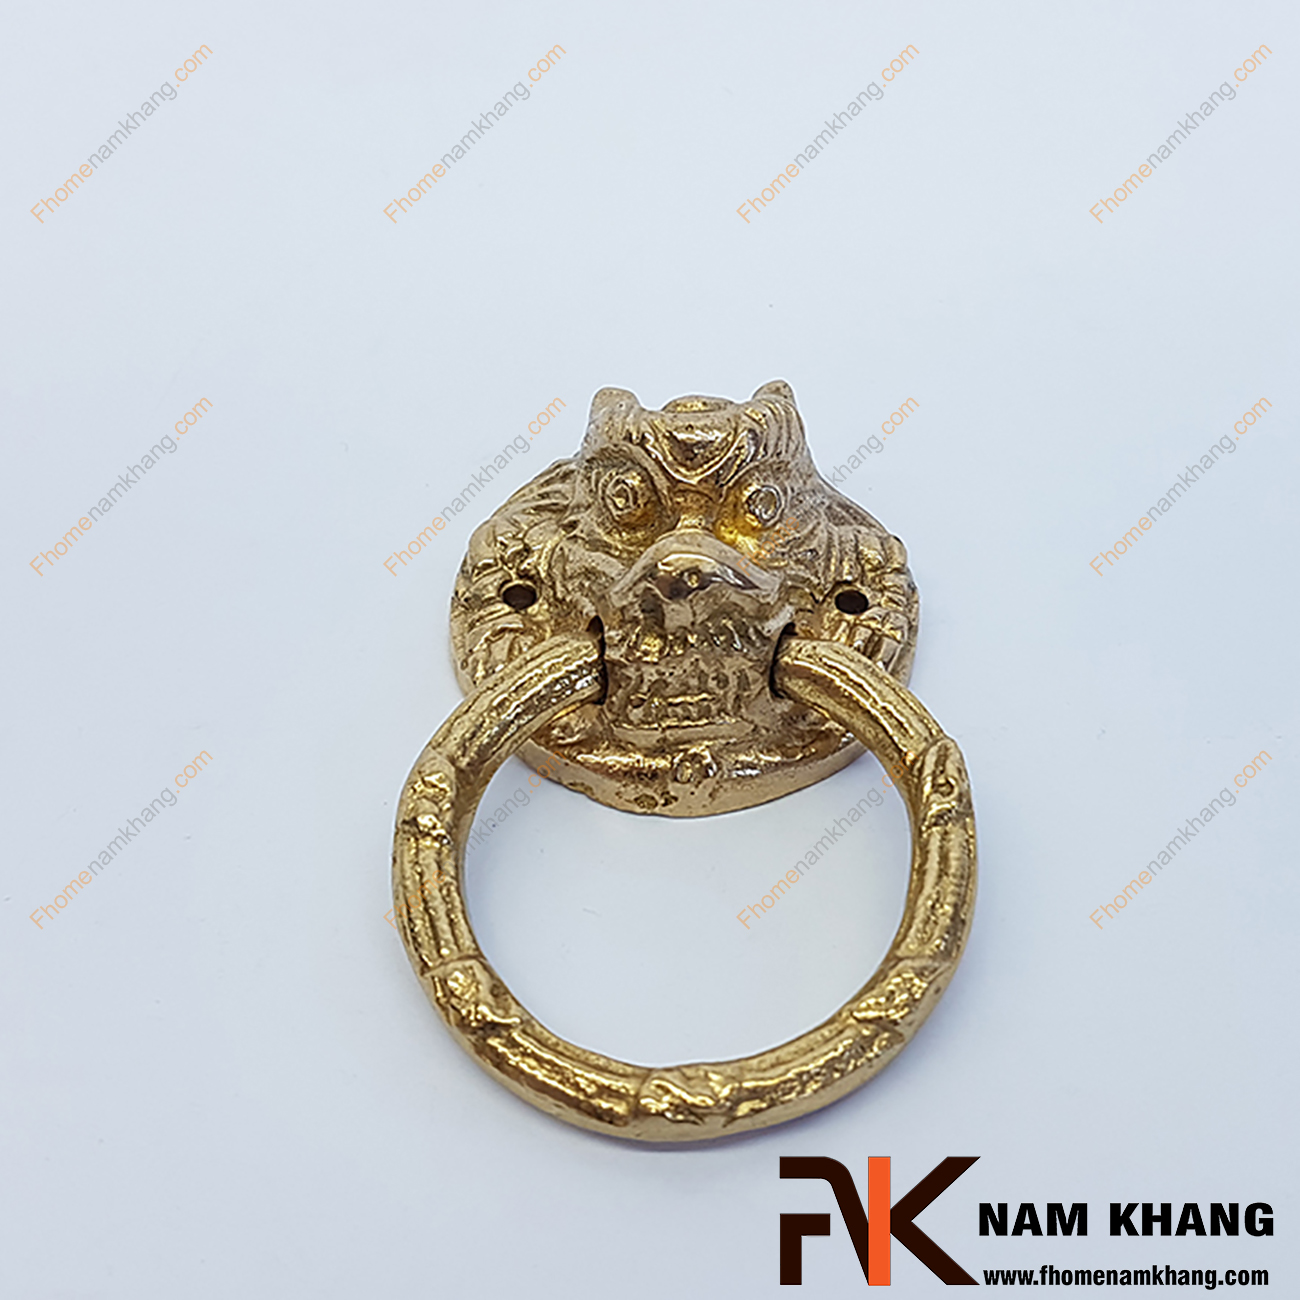 Núm nắm tủ đồng vàng đầu sư tử NKD048 là một sản phẩm nội thất được chế tạo lấy cảm hứng từ sự uy quyền của loài sư tử dũng mãnh.